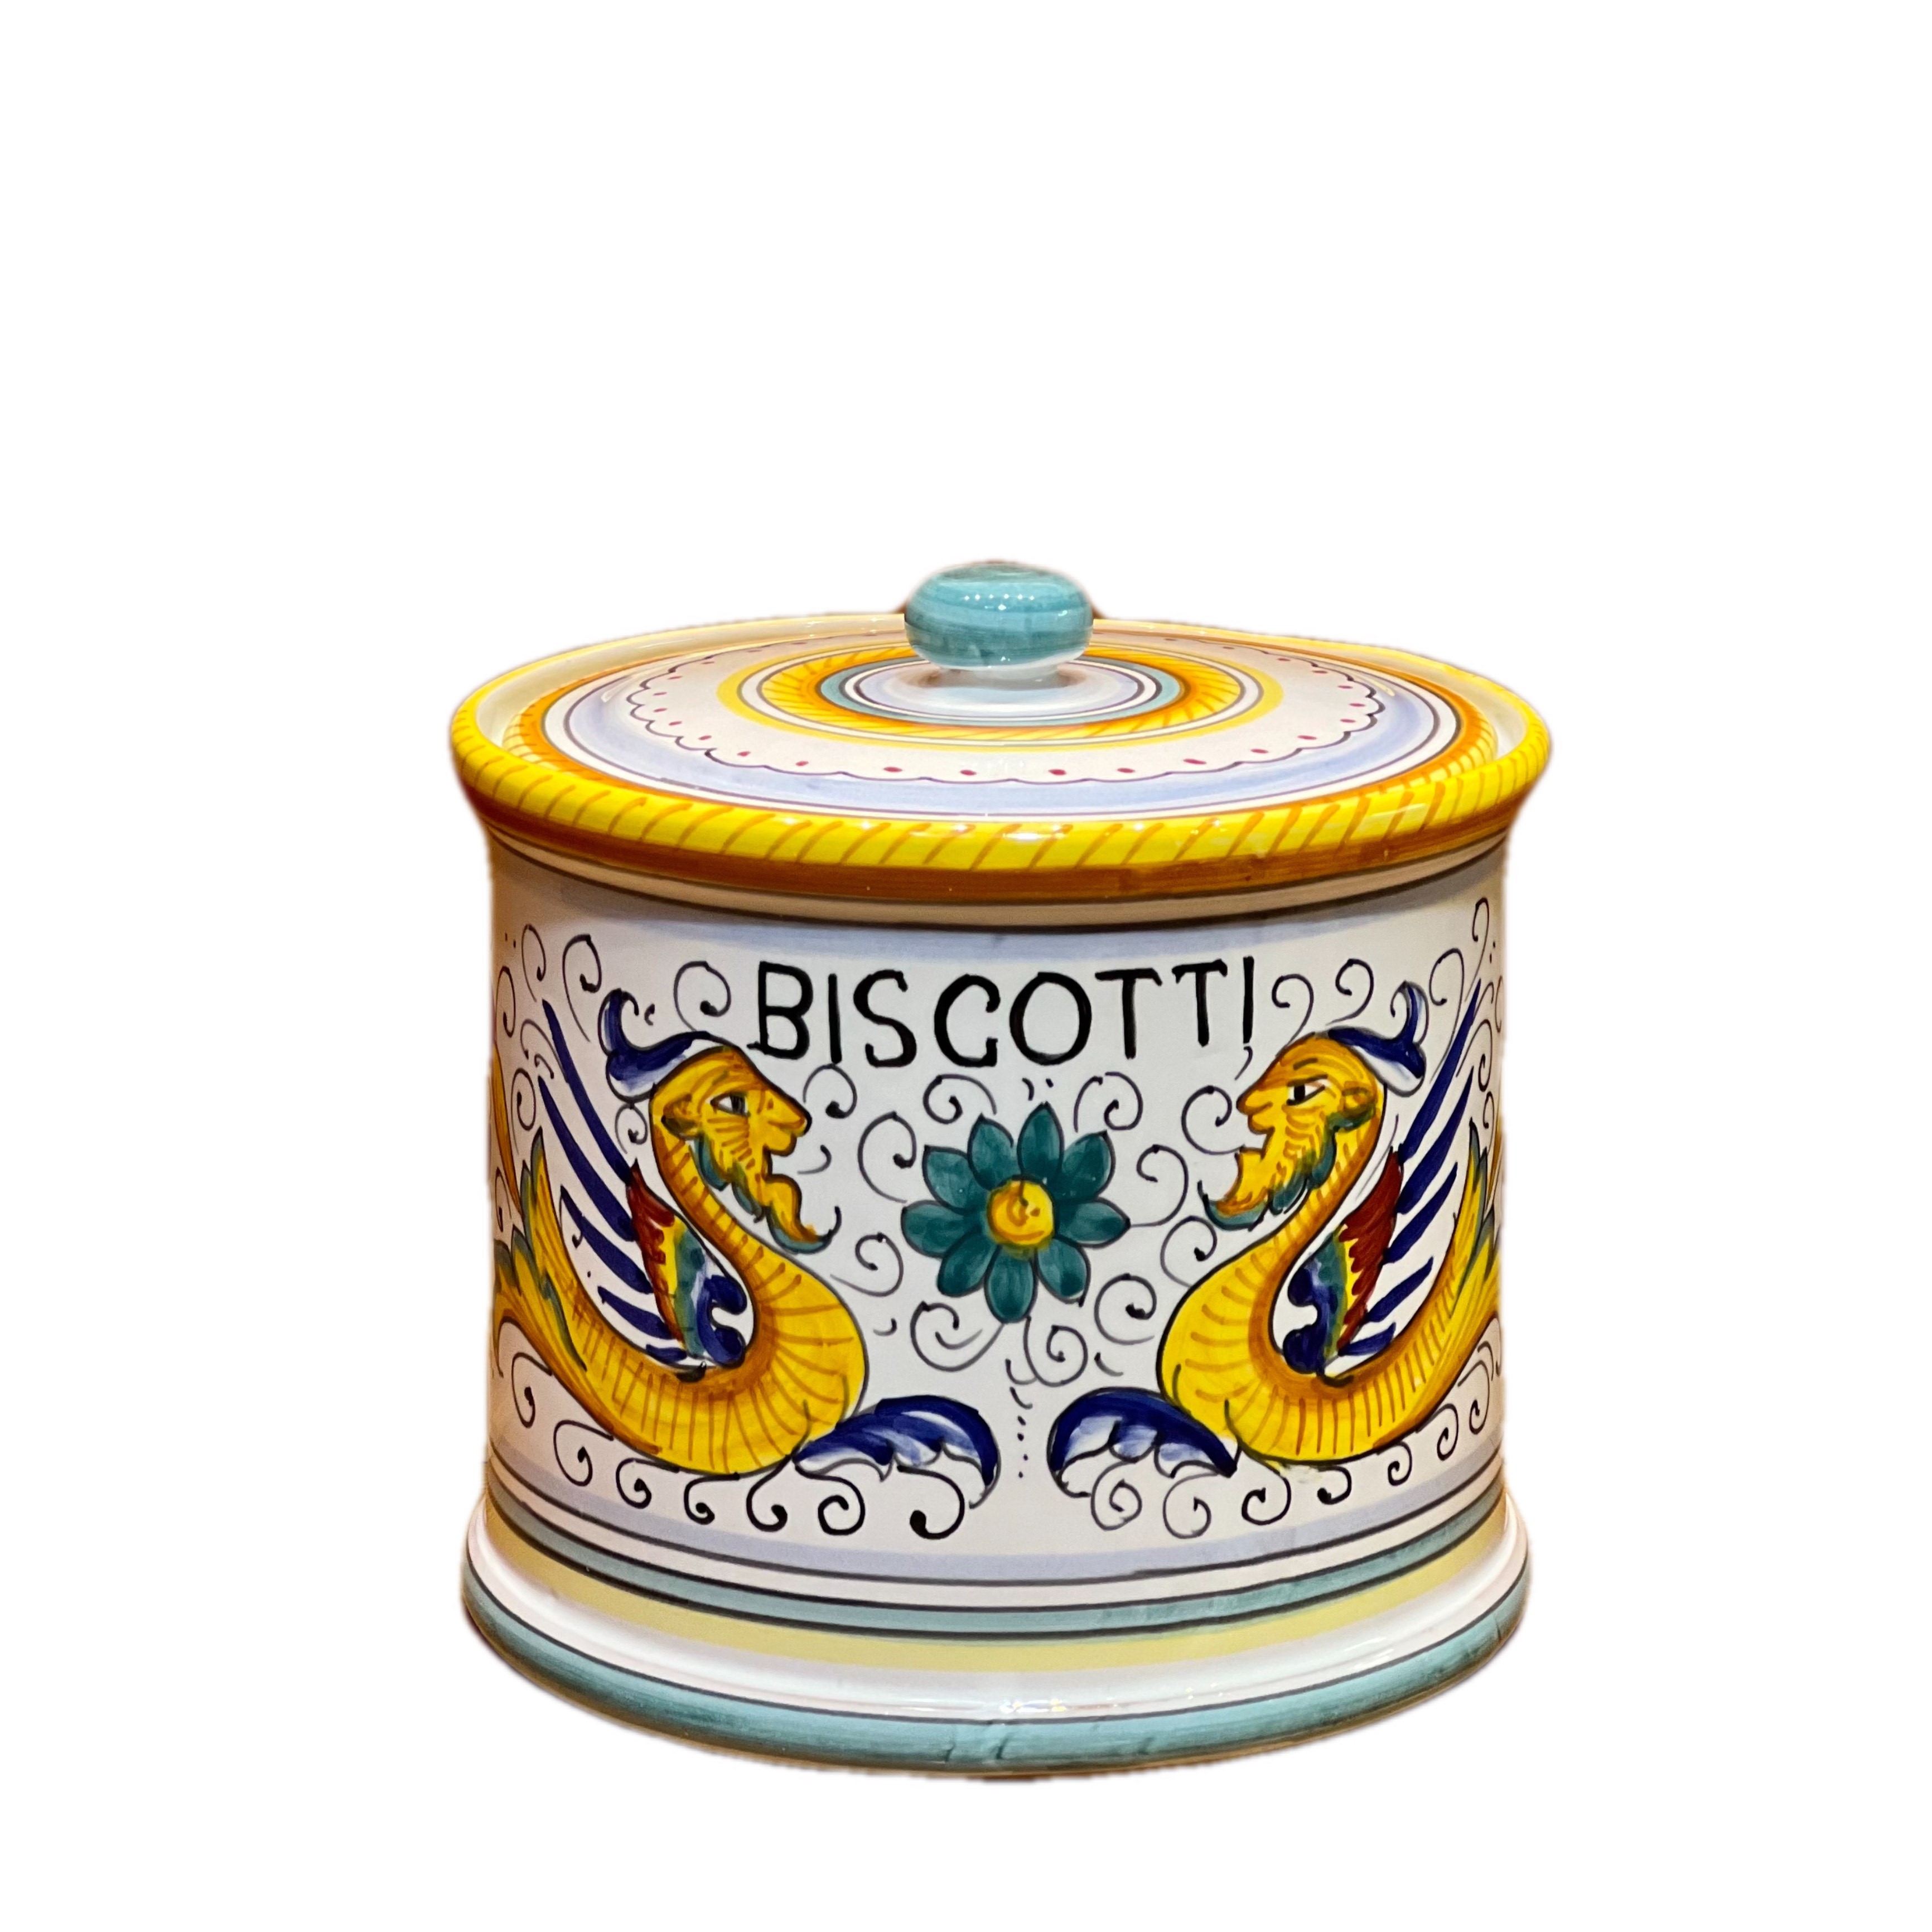 Biscotti Jar, Kitchen Counter Organizers